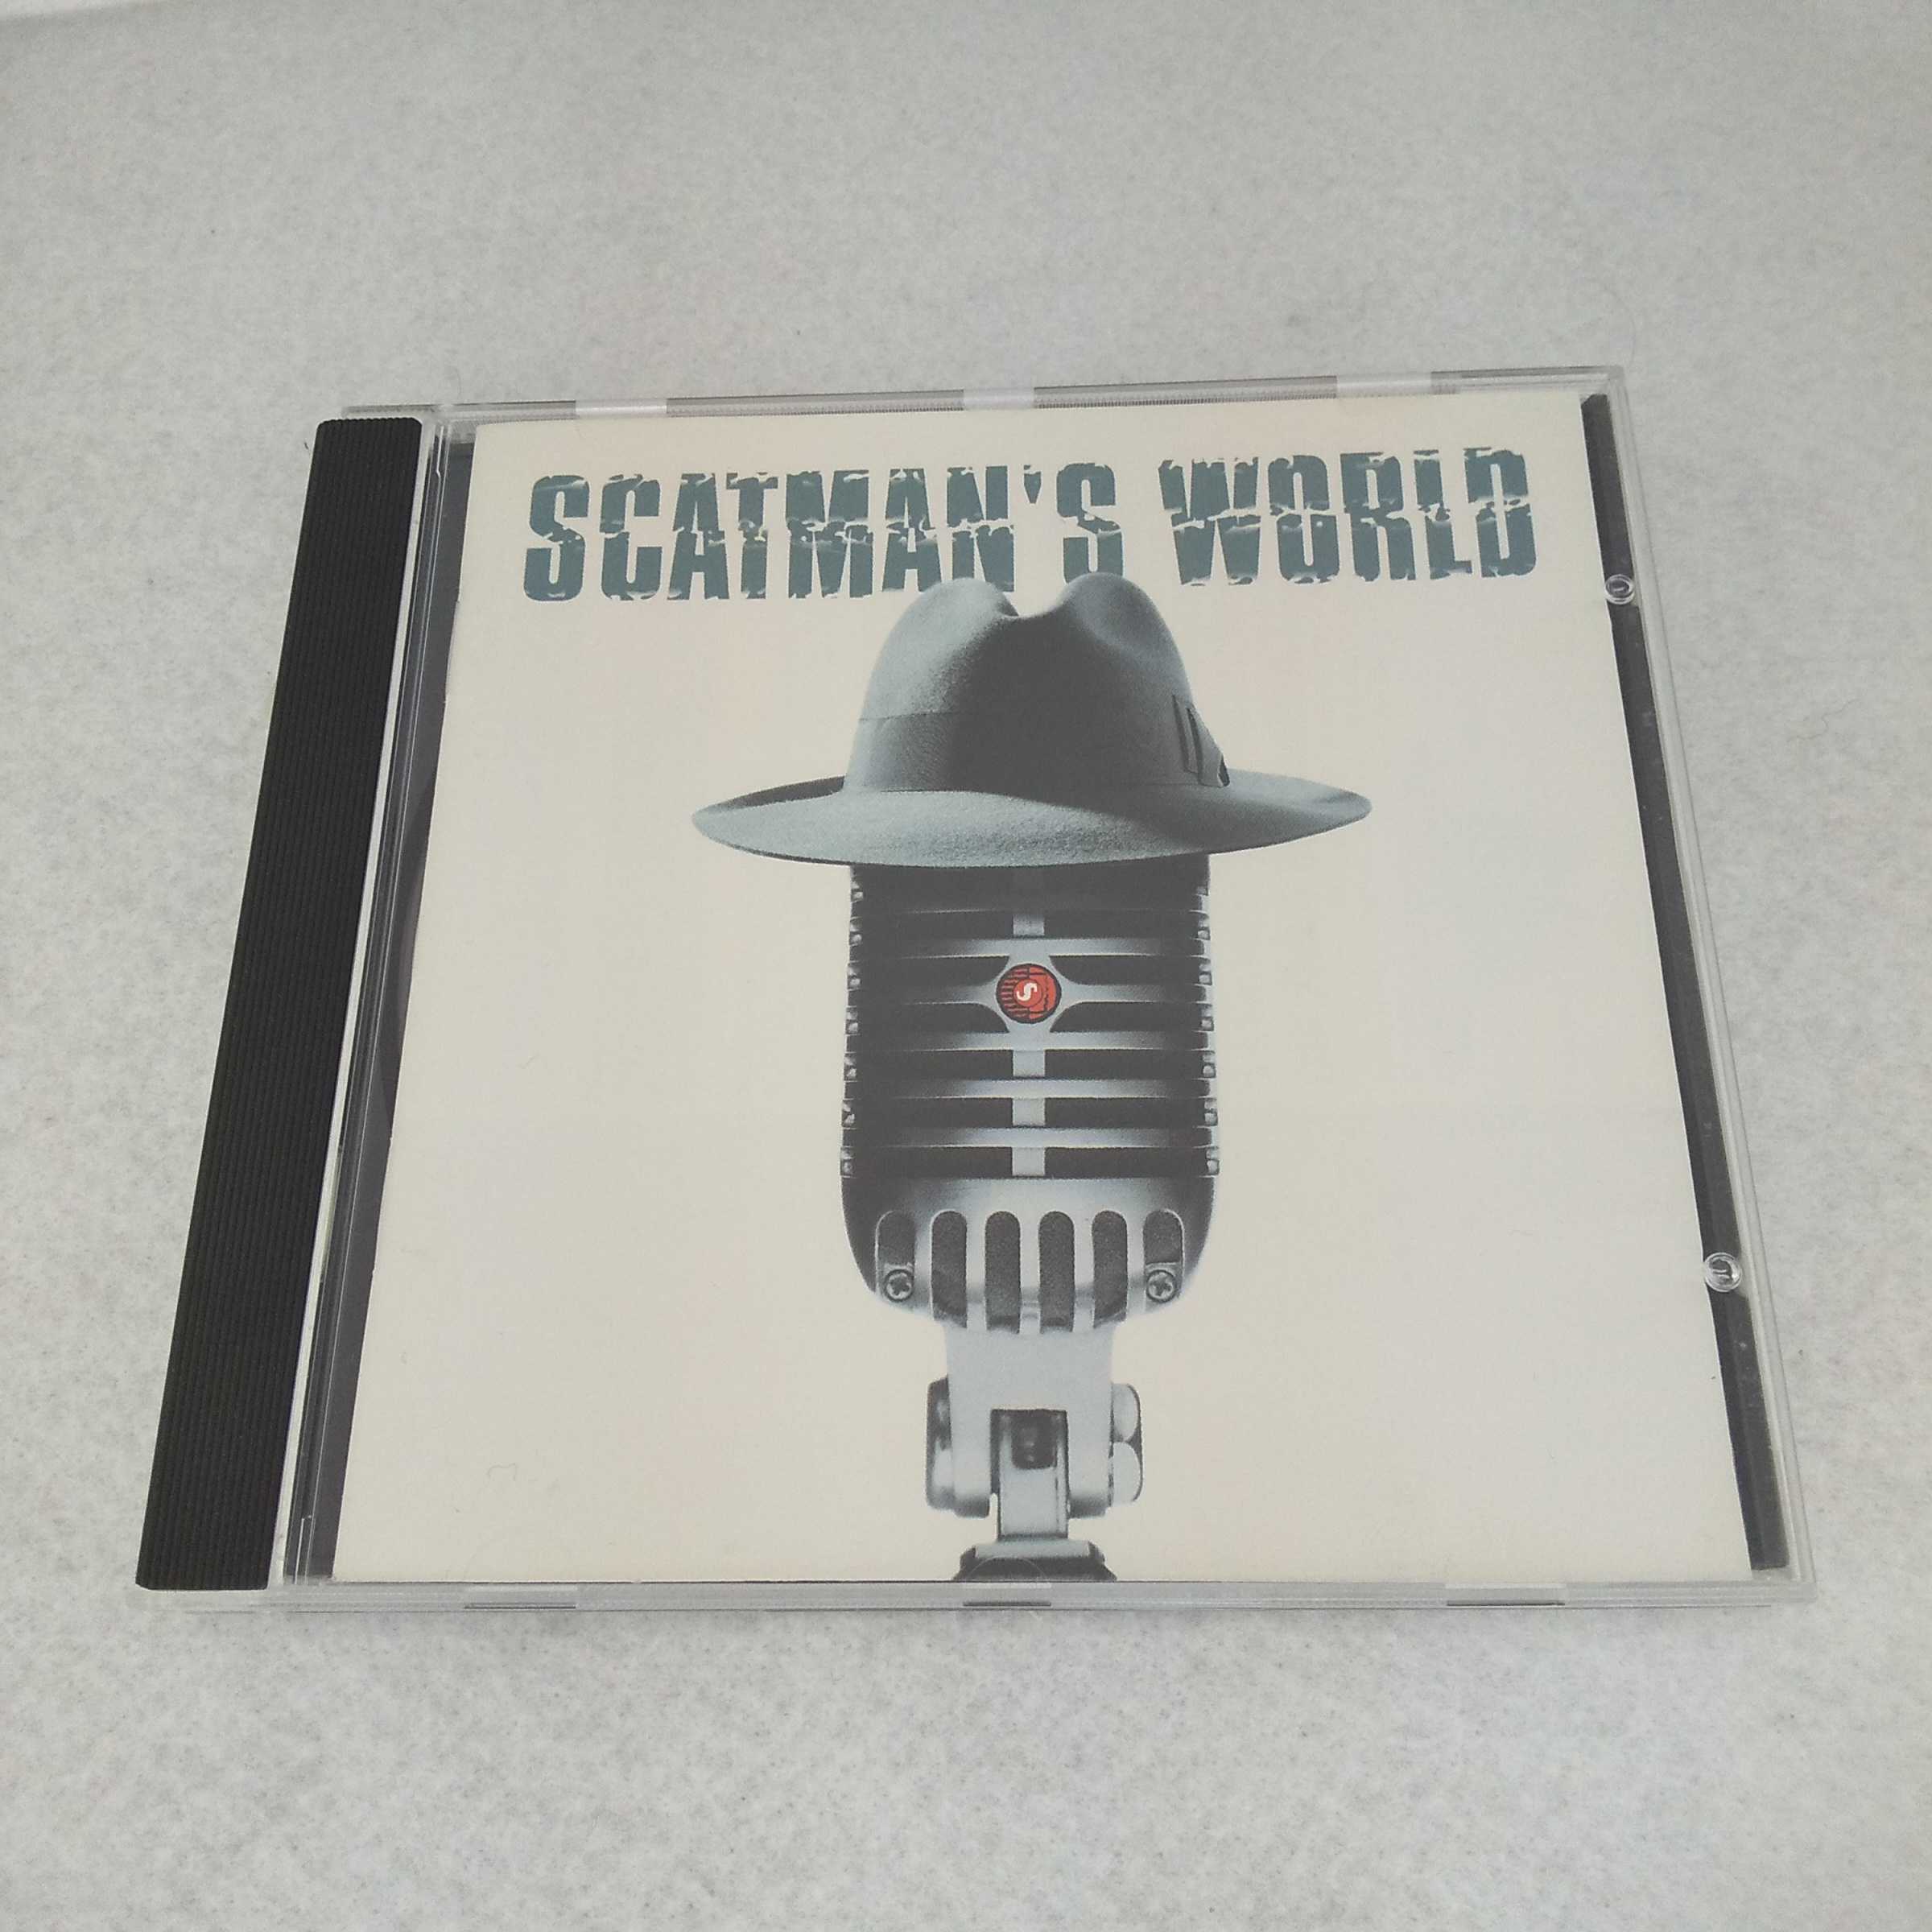 【収録曲】 　【01】Welcome To Scatland 　【02】Scatman's World 　【03】Only You 　　含む全13曲収録 【状態】目立った難はありませんが、中古品となります。 ★　必ずお読みください　★ -------------------------------------------------------- 【送料について】 　　●　1商品につき送料：300円 　　●　商品代金10,000円以上で送料無料 　　●　商品の個数により、ゆうメール、佐川急便、ヤマト運輸 　　　　ゆうパックのいずれかで発送いたします。 　　当社指定の配送となります。 　　配送業者の指定は承っておりません。 -------------------------------------------------------- 【商品について】 　　●　VHS、DVD、CD、本はレンタル落ちの中古品で 　　　　ございます。 　　 　　 　　●　ケース・ジャケット・テープ本体に 　　　　バーコードシール等が貼ってある場合があります。 　　　　クリーニングを行いますが、汚れ・シール・若干のキズ等が 　　　　残る場合がございます。 　　●　映像・音声チェックは行っておりませんので、 　　　　神経質な方のご購入はお控えください。 --------------------------------------------------------